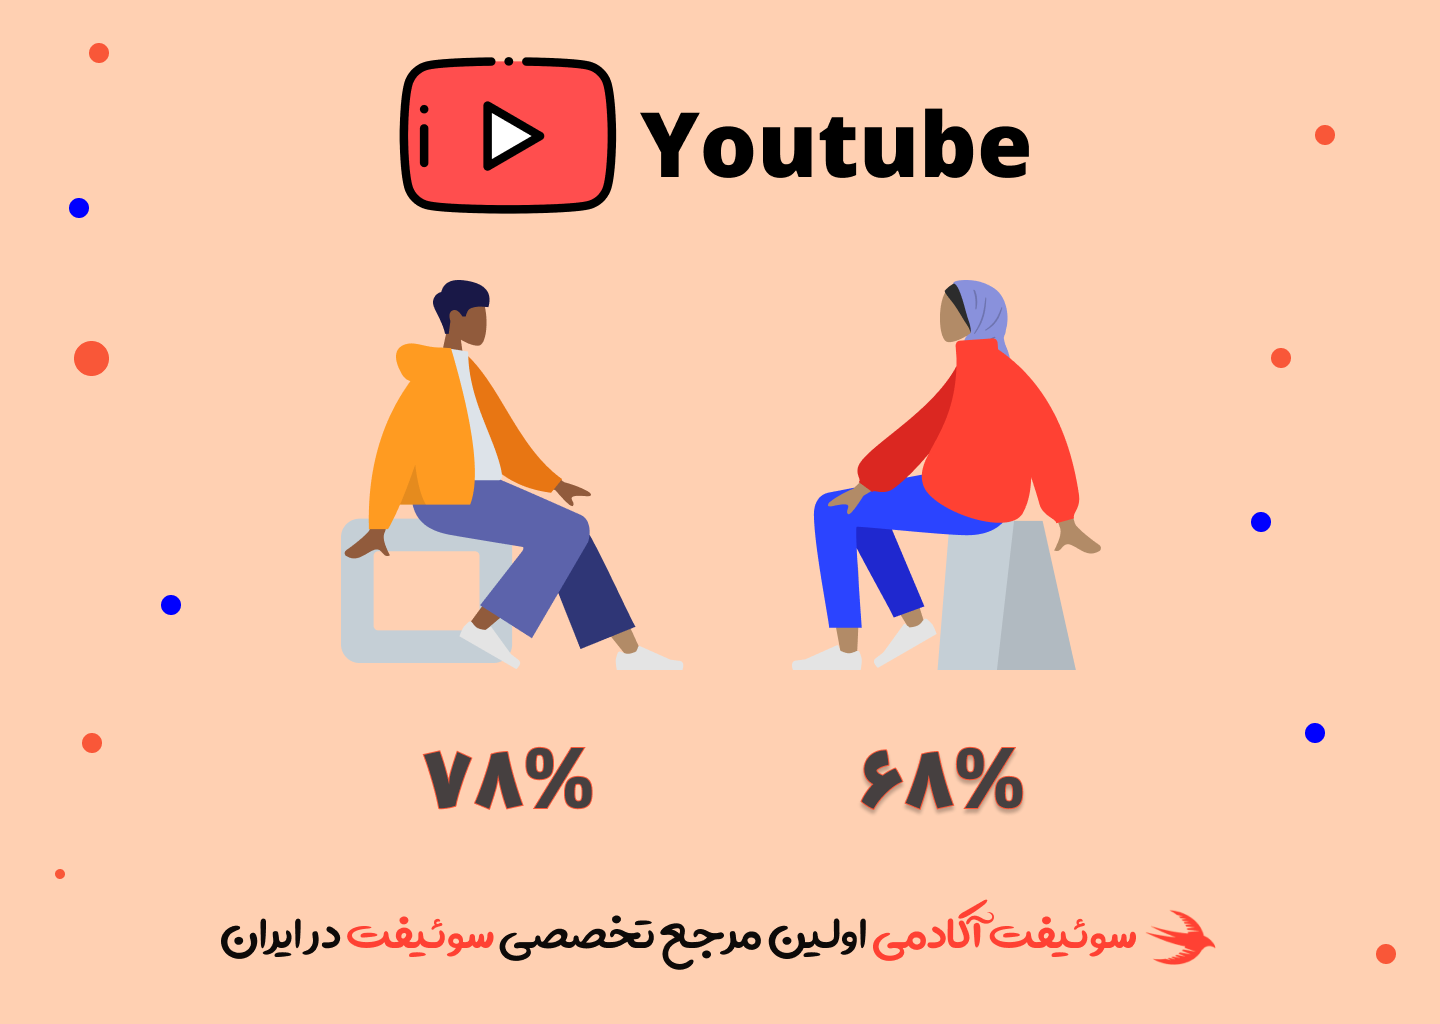 63 درصد آقایان و 75 درصد خانم ها از یوتیوب استفاده میکنند.